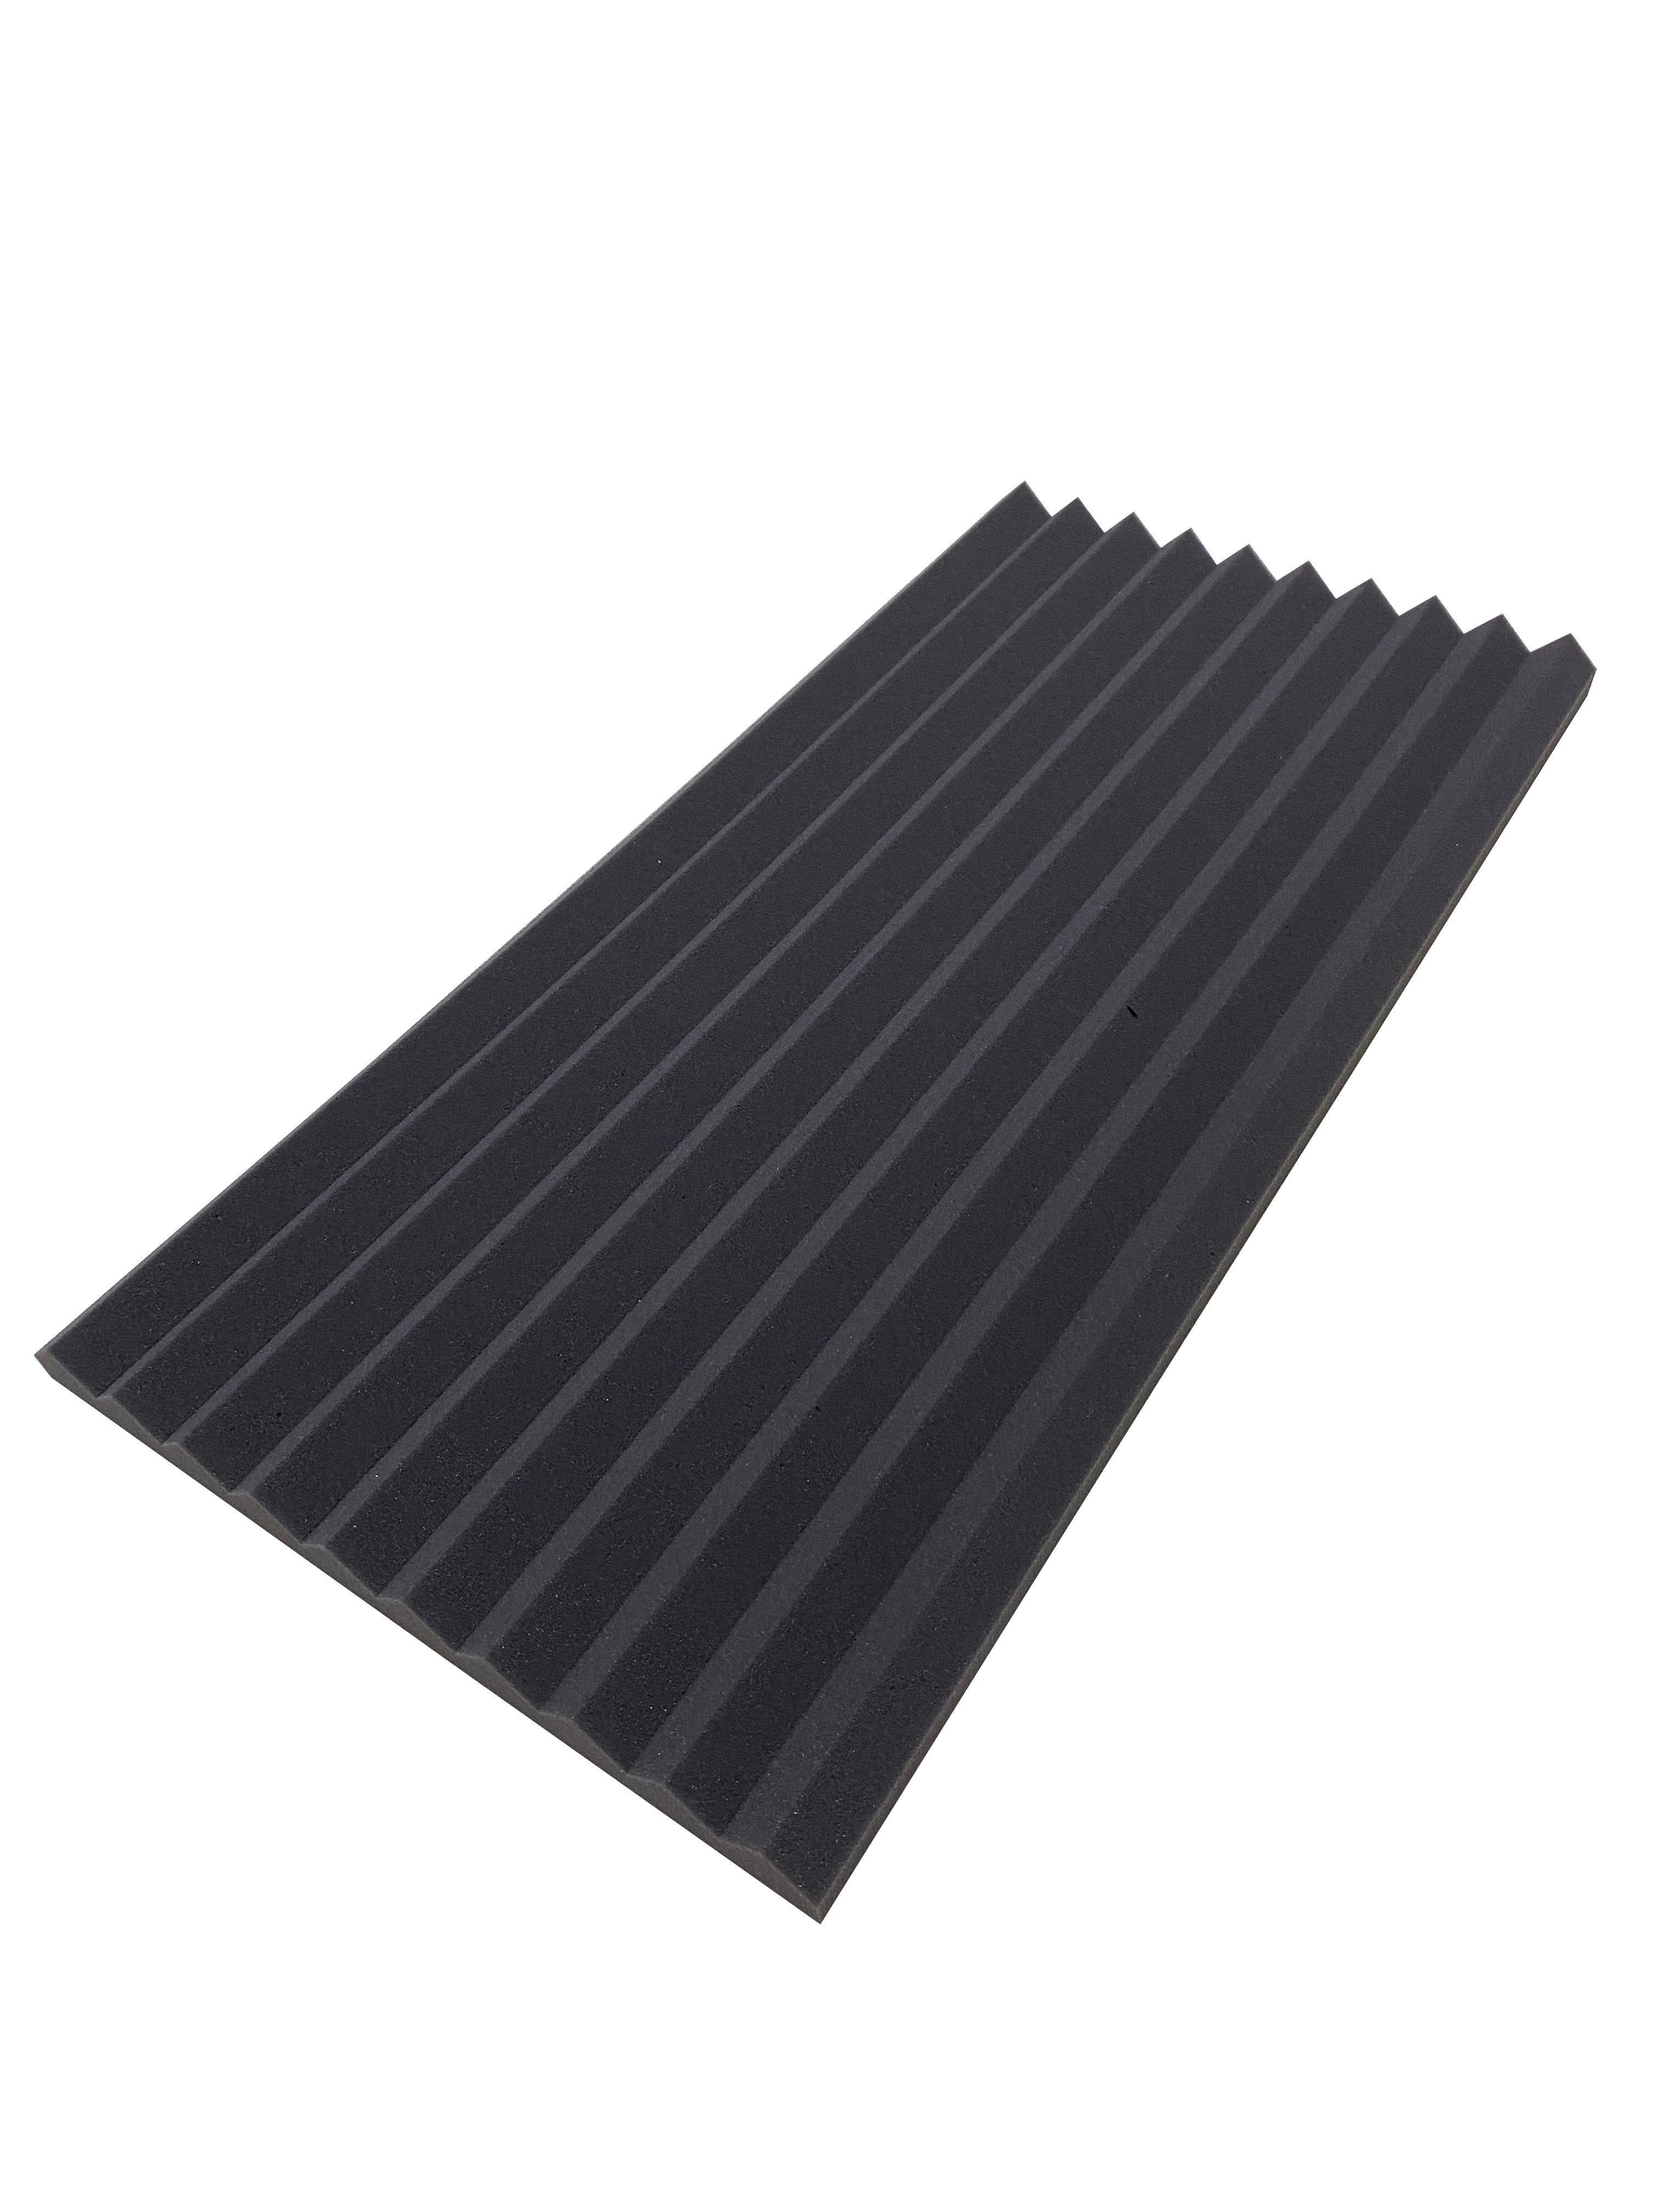 Buy dark-grey Wedge 30&quot;x15&quot; Acoustic Studio Foam Tile Pack